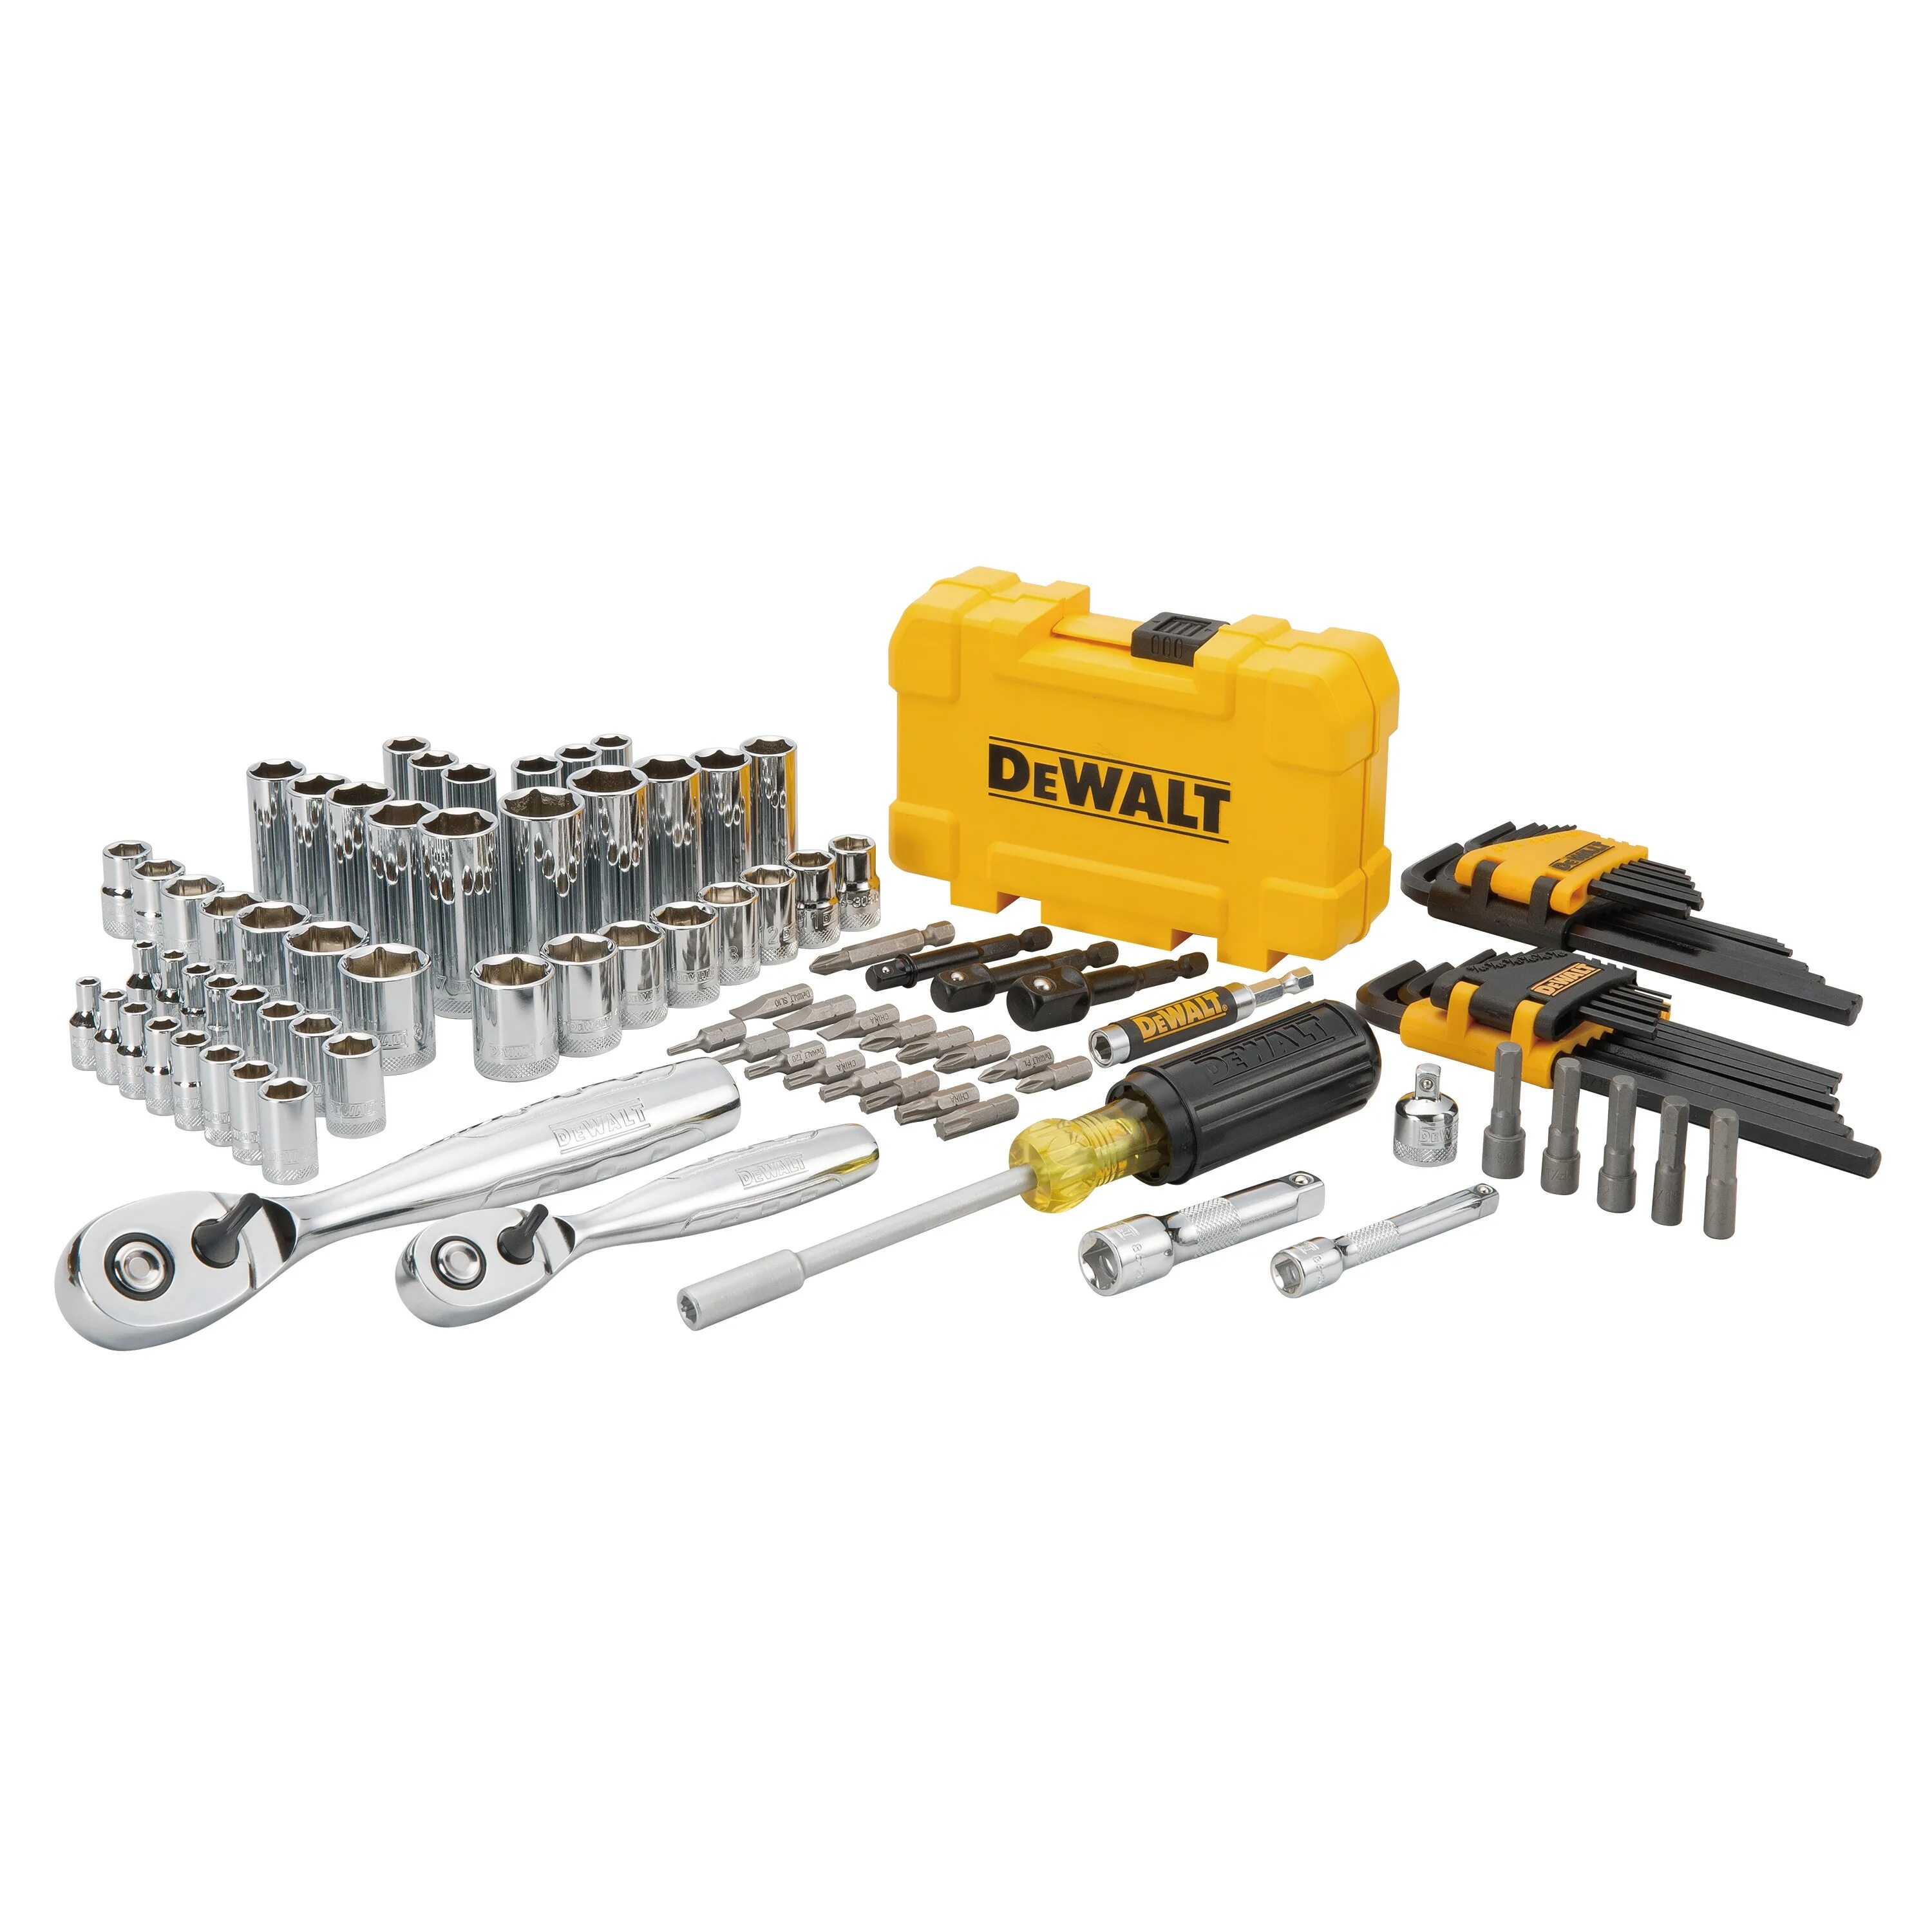 Ручной инструмент ДЕВОЛТ. DEWALT Mechanics Tools Kit and Socket Set 142 piece dwmt73802. Наборы бит 3/8 gross. DEWALT инструментов. Сетевой инструмент DEWALT набор.